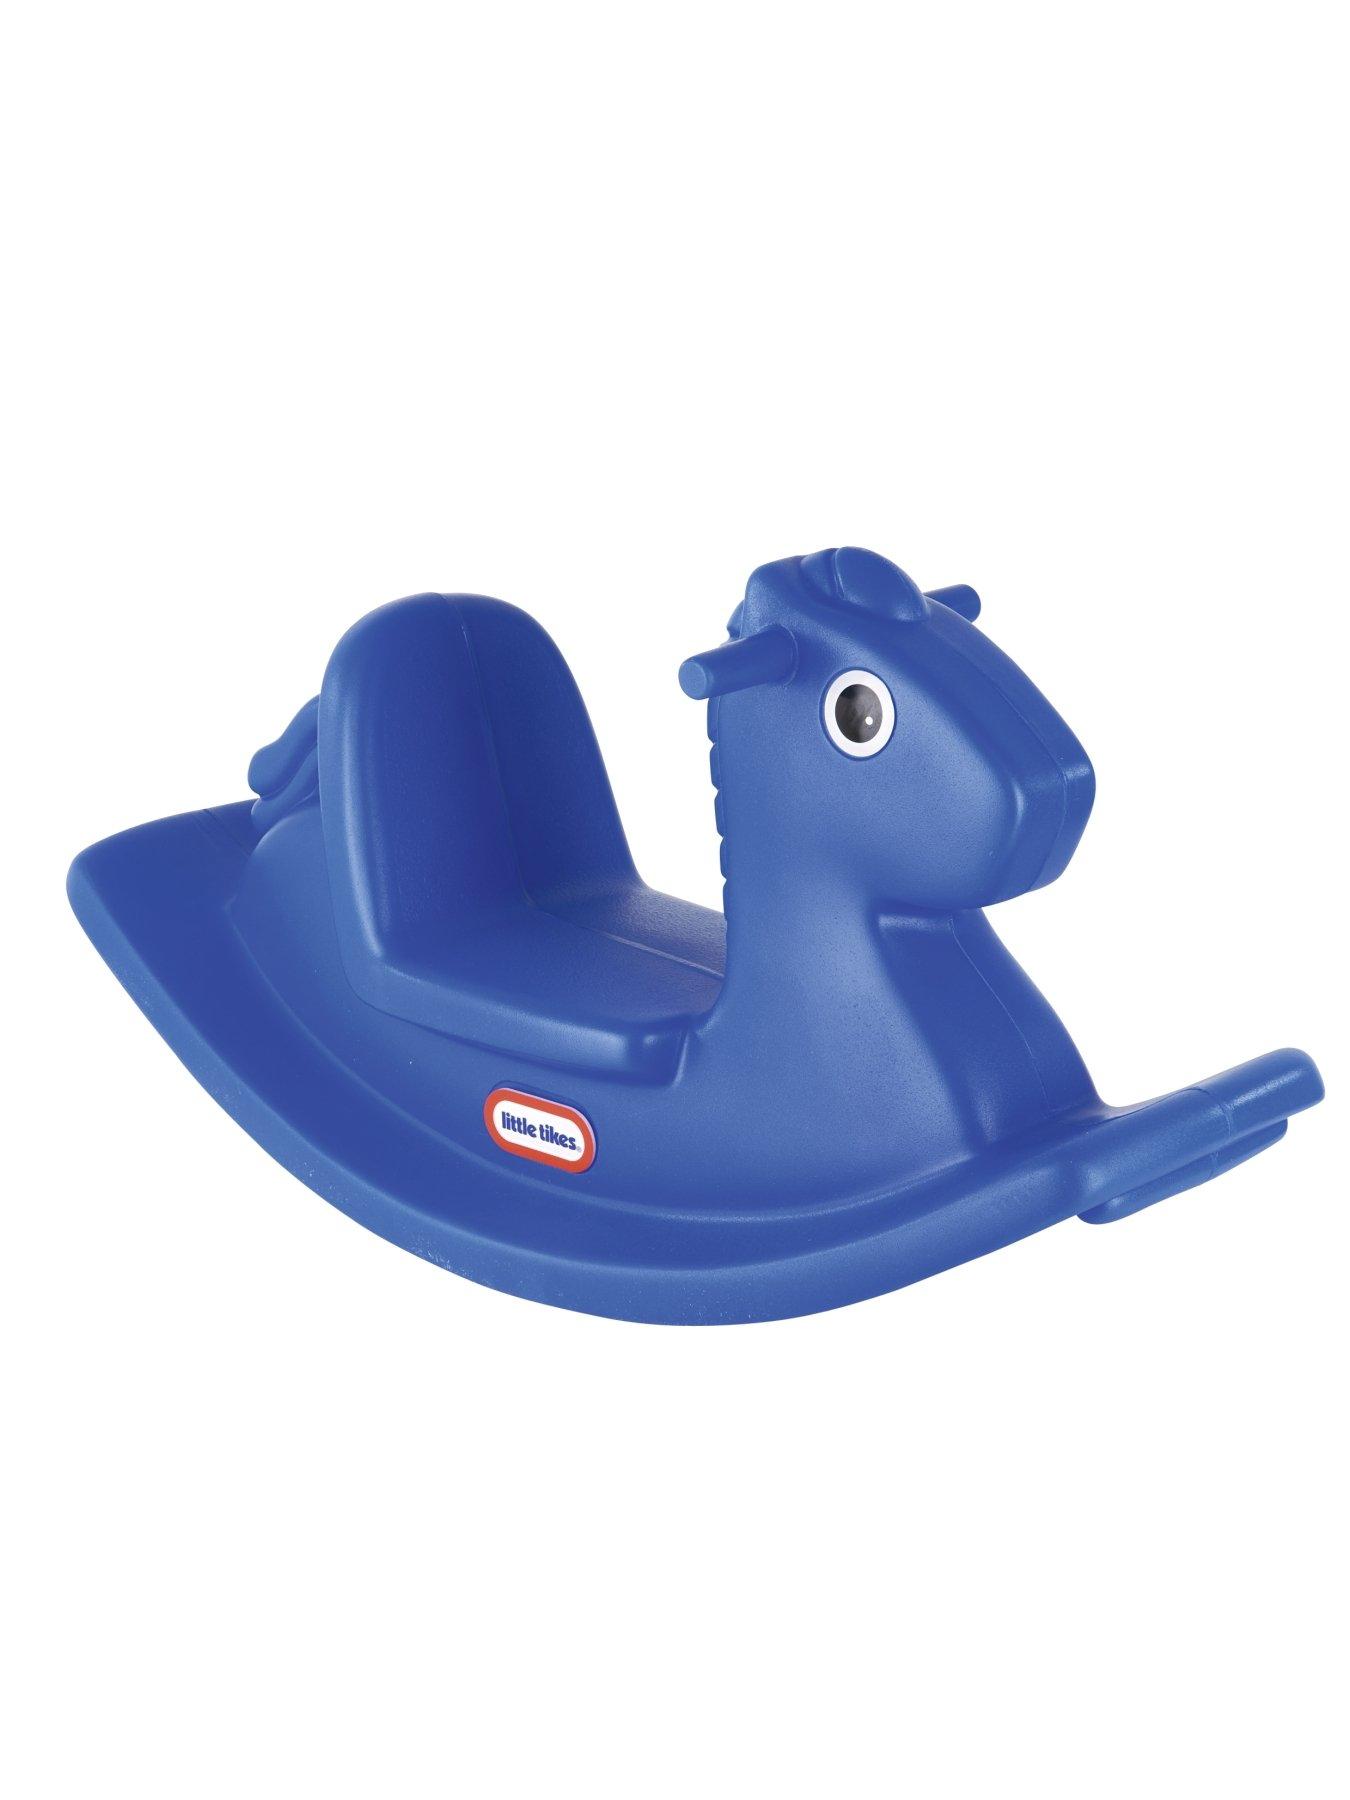 blue rocking horse